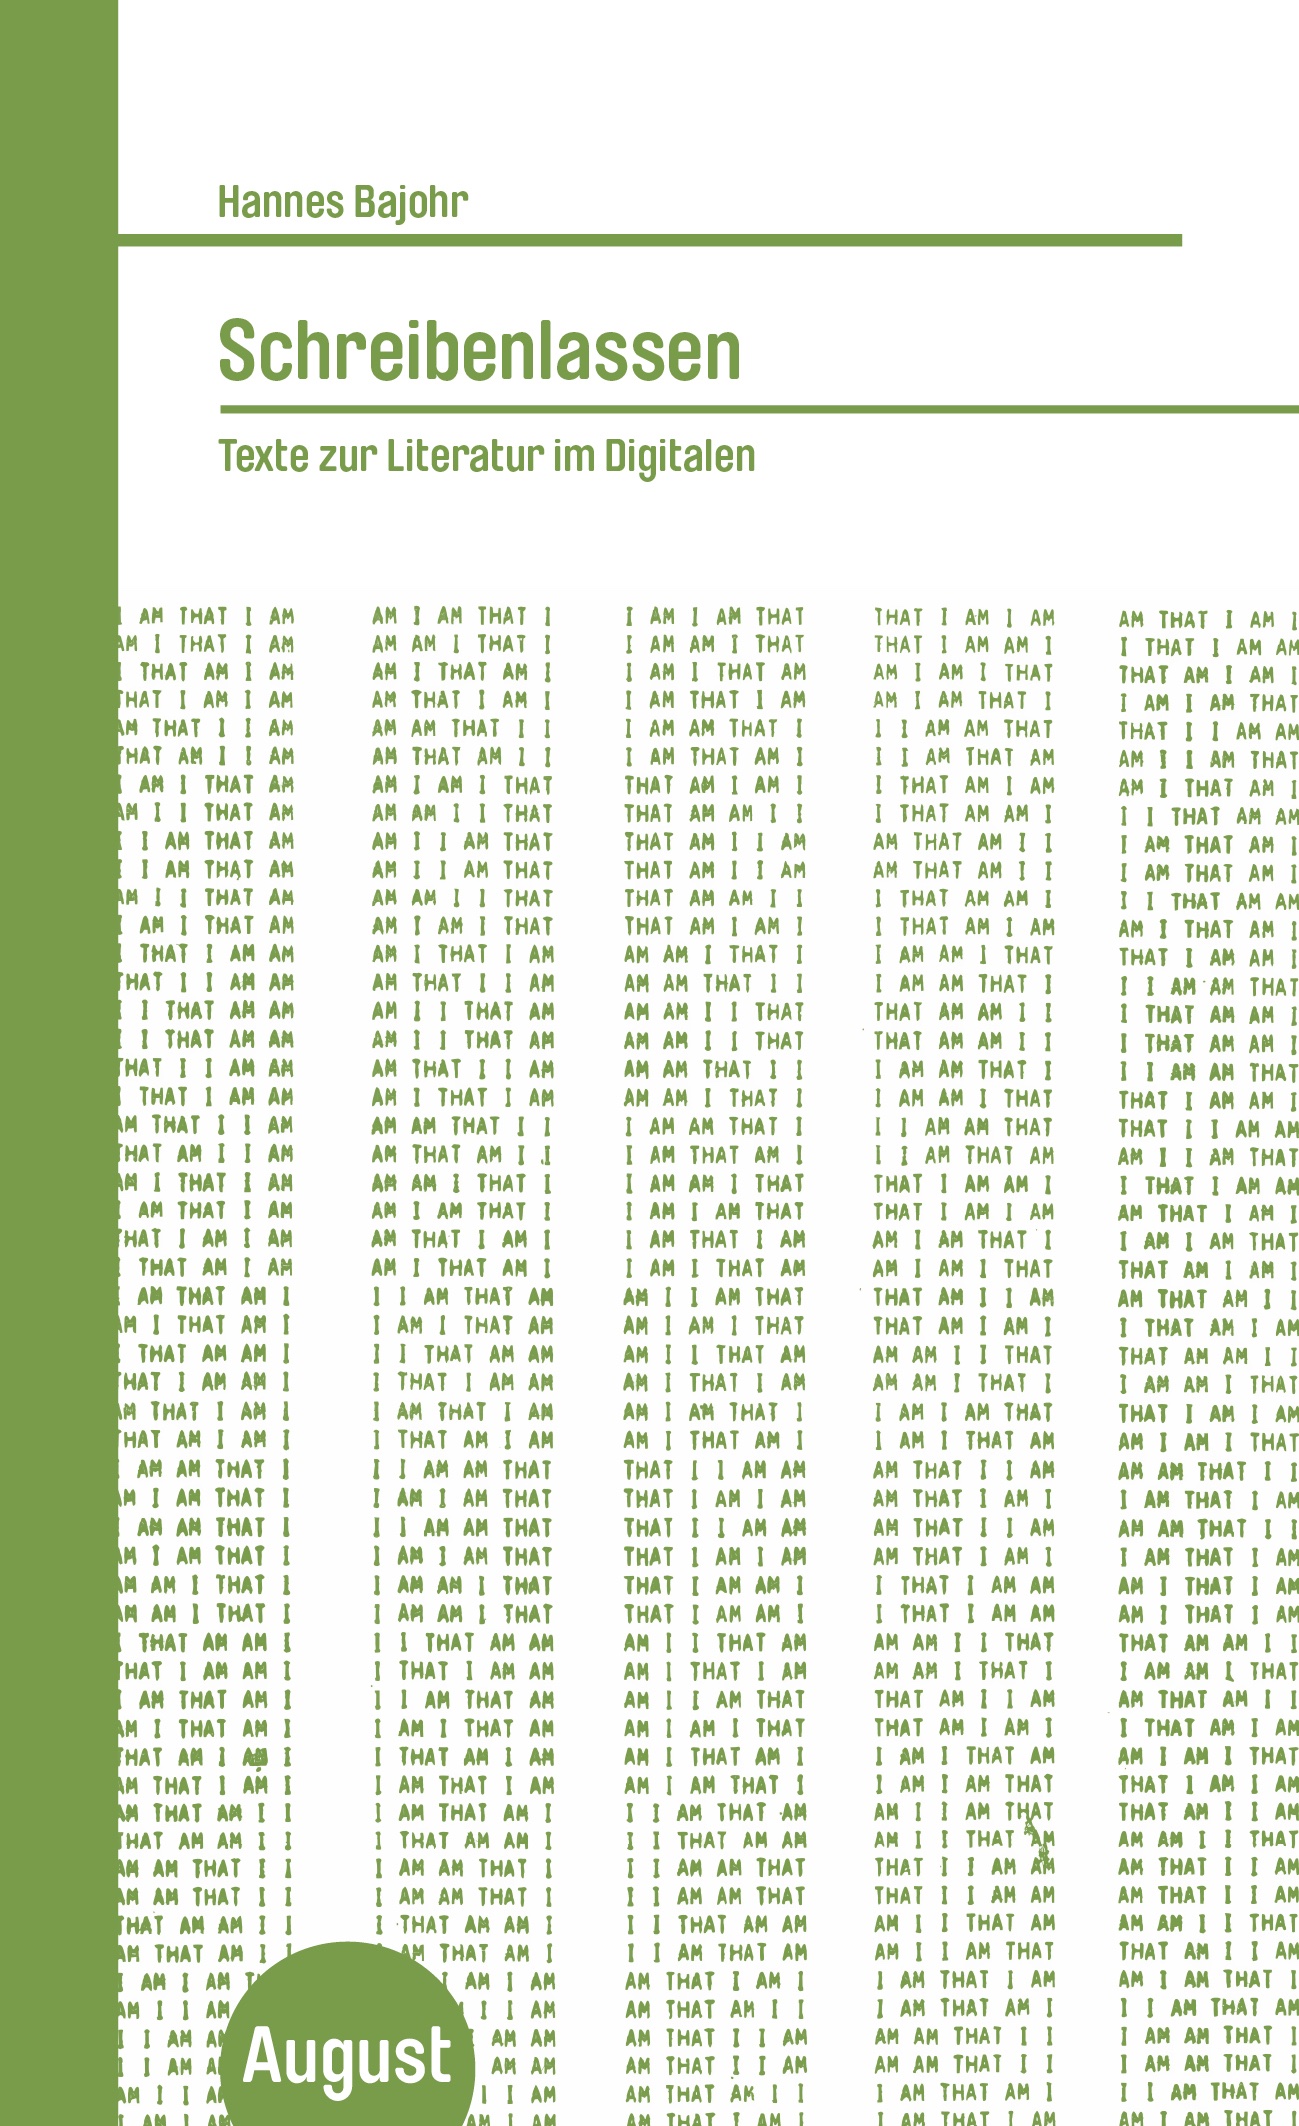 Cover Hannes Bajohr, Schreibenlassen. Texte zur Literatur im Digitalen. Berlin: August 2022